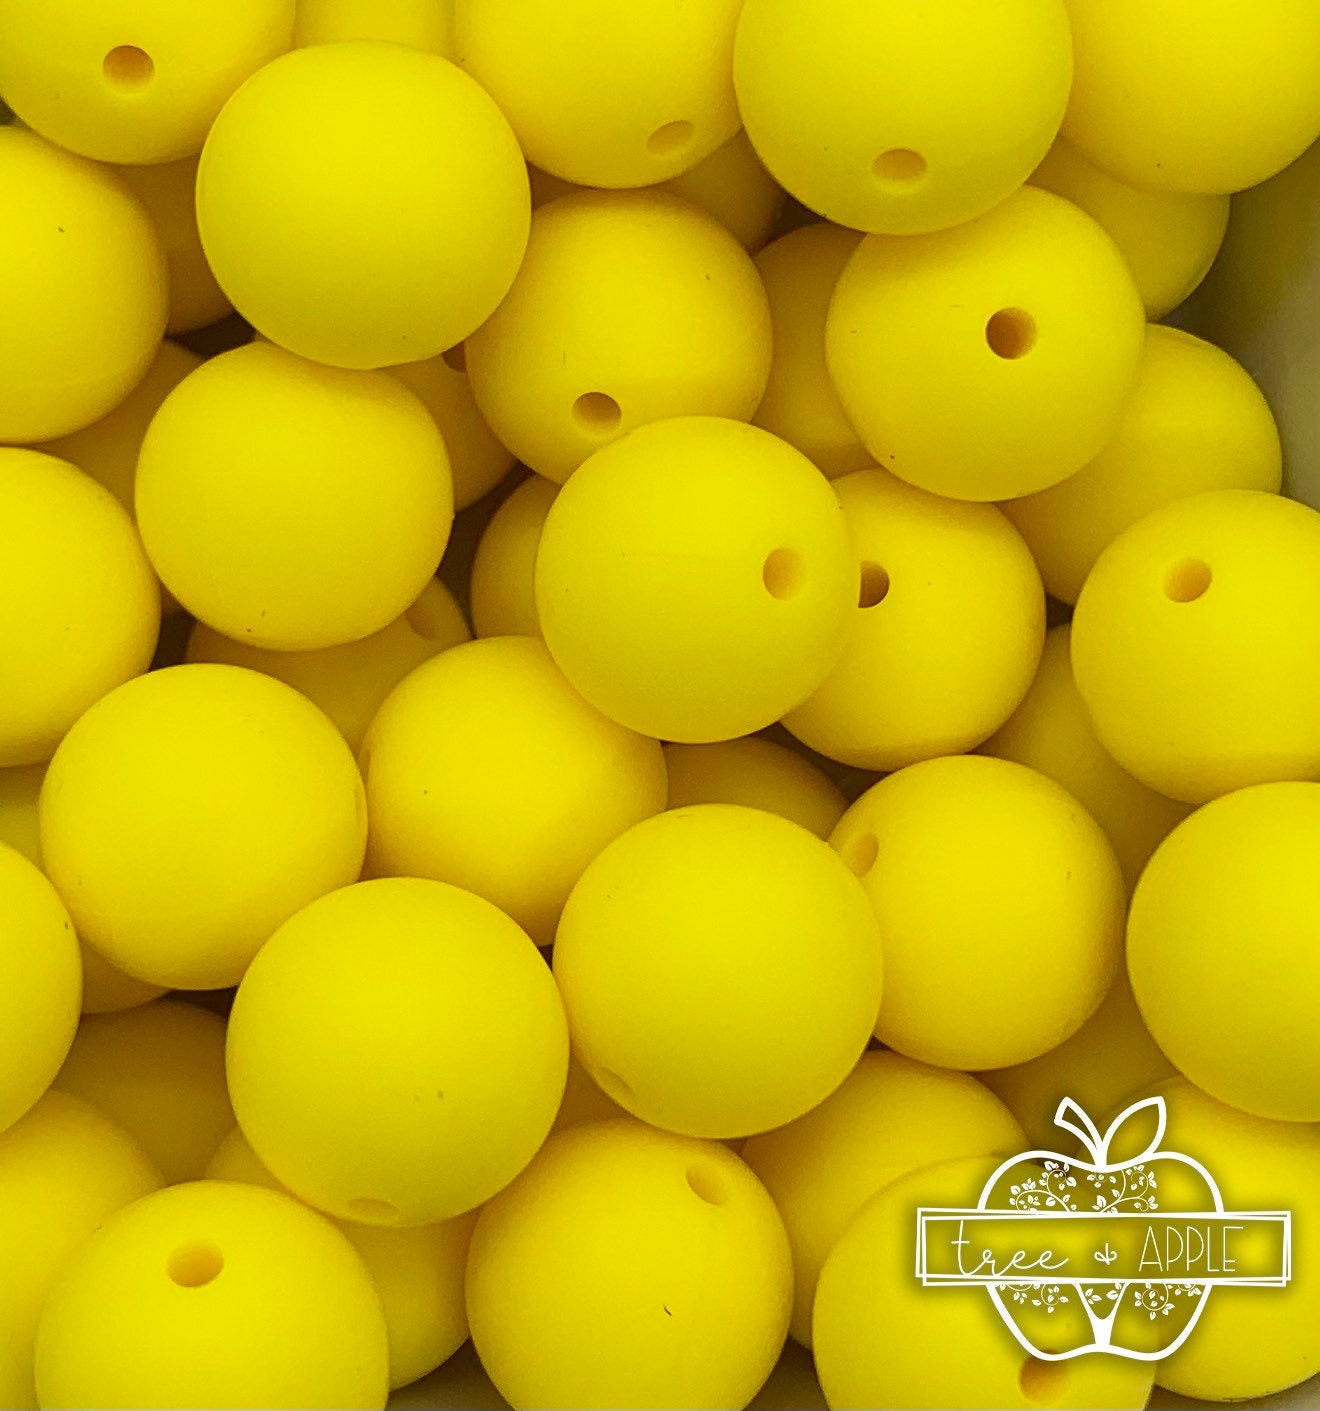 15mm Sunshine Yellow Round Silicone Beads, Yellow Round Silicone Beads,  Beads Wholesale